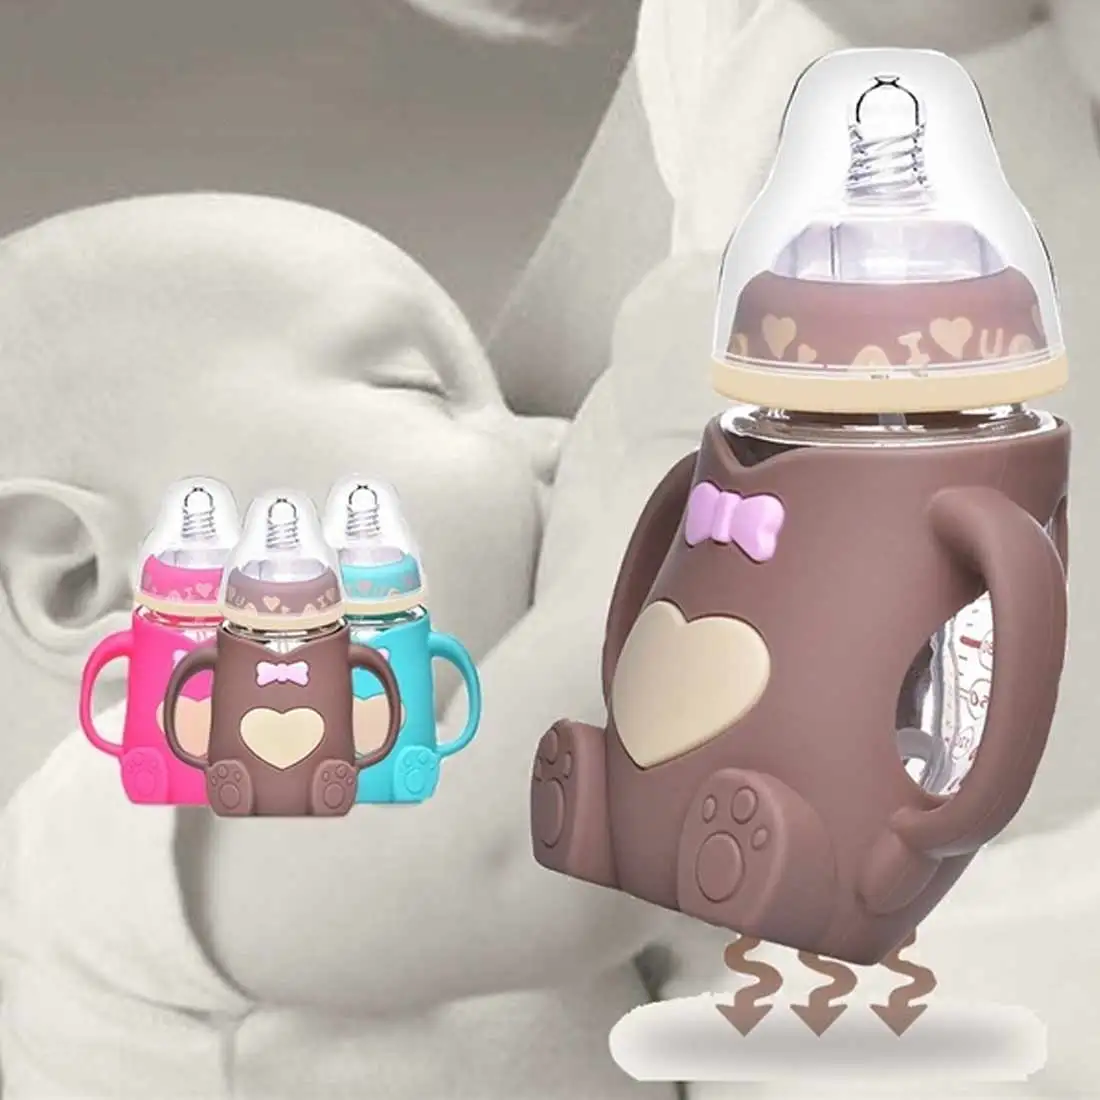 Милый, для новорожденных и малышей кормления Стекло бутылка силикон, безопасный для ребенка молочная бутылка с ручкой мягкий рот новорожденных Пейте обучение бутылочка для кормления